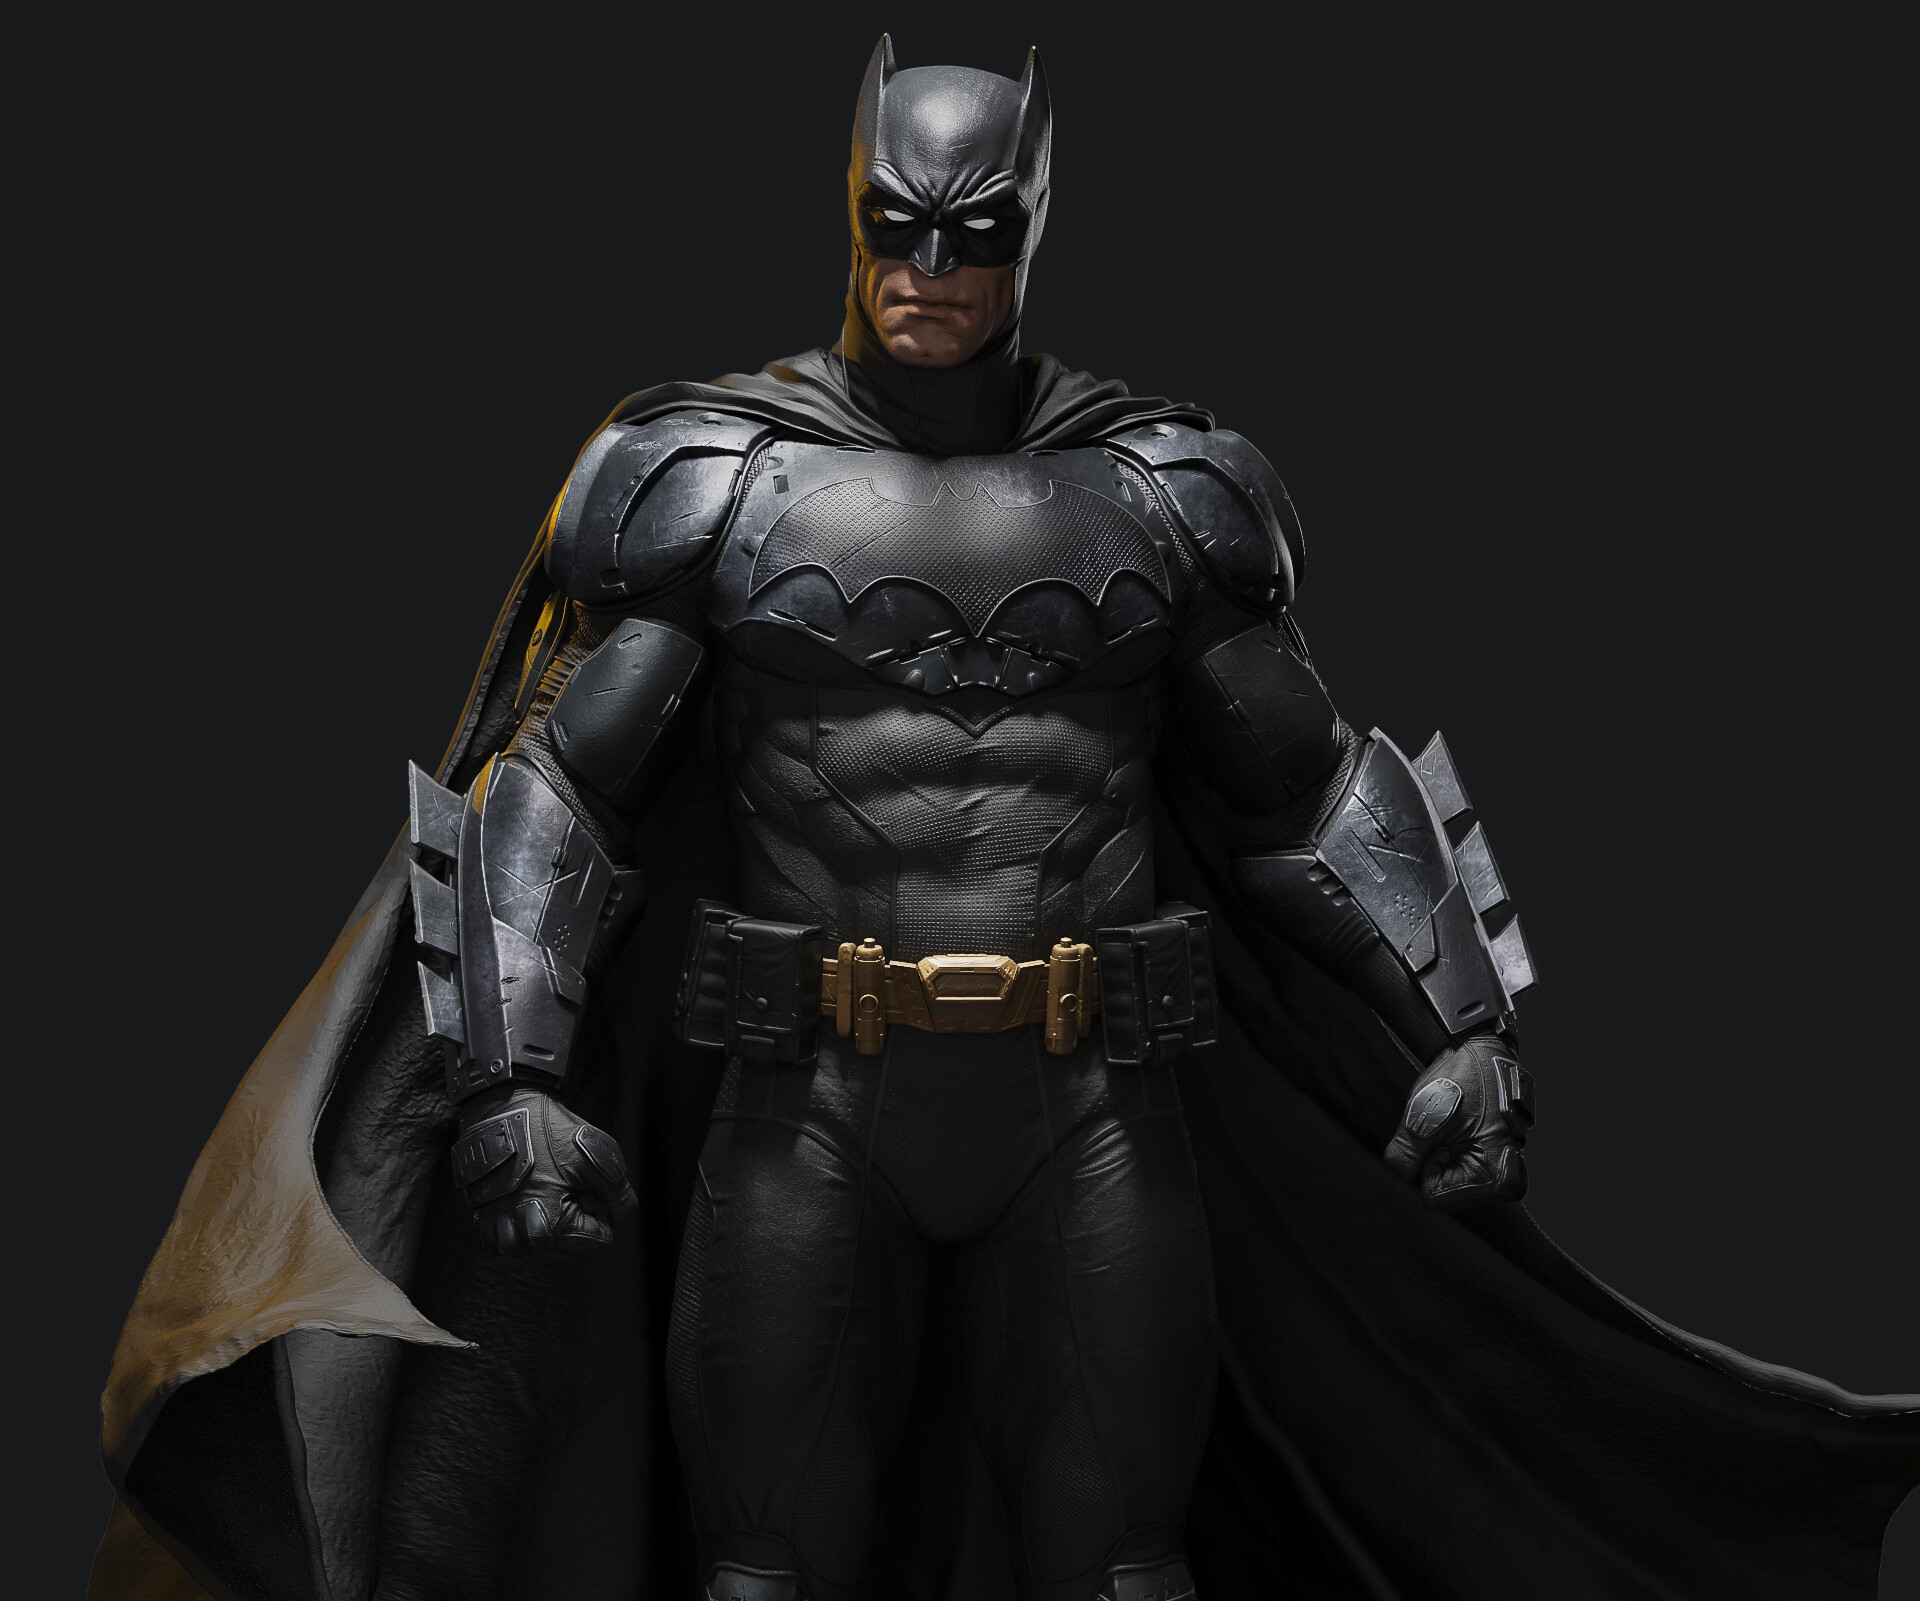 ArtStation - Batman statue fan art